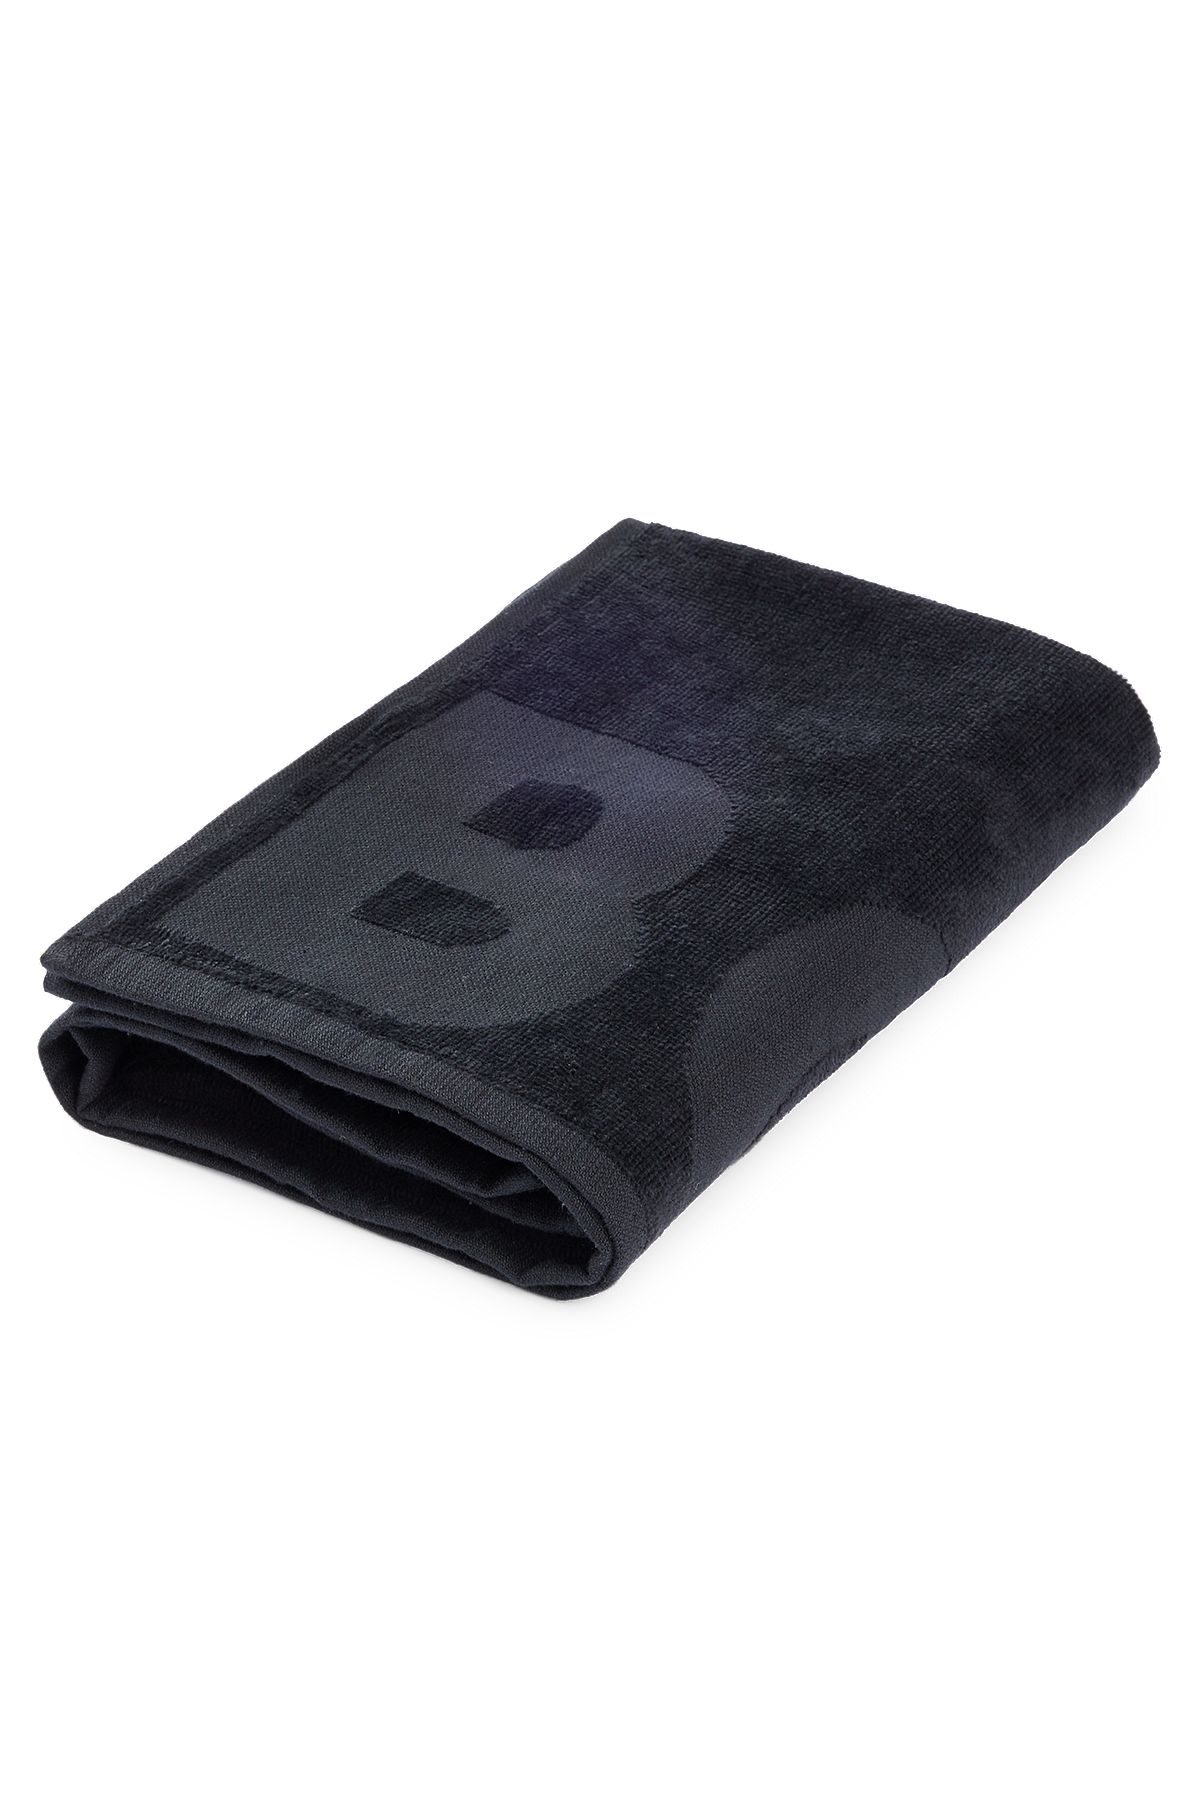 Asciugamano in cotone egeo nero con logo tono su tono, Grigio scuro